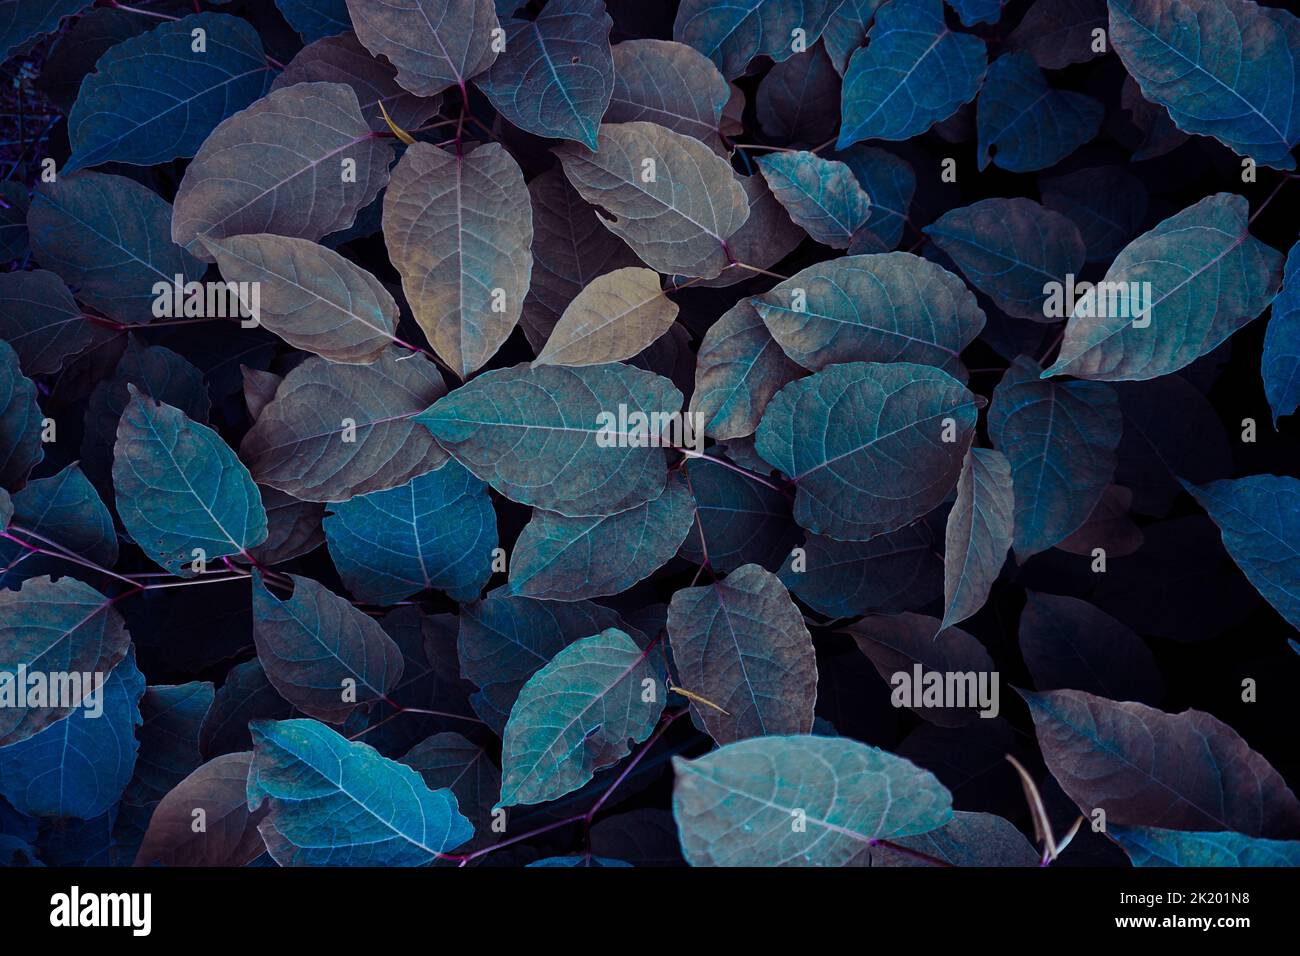 las hojas azules de la planta en la naturaleza en la estación del otoño, fondo azul Foto de stock